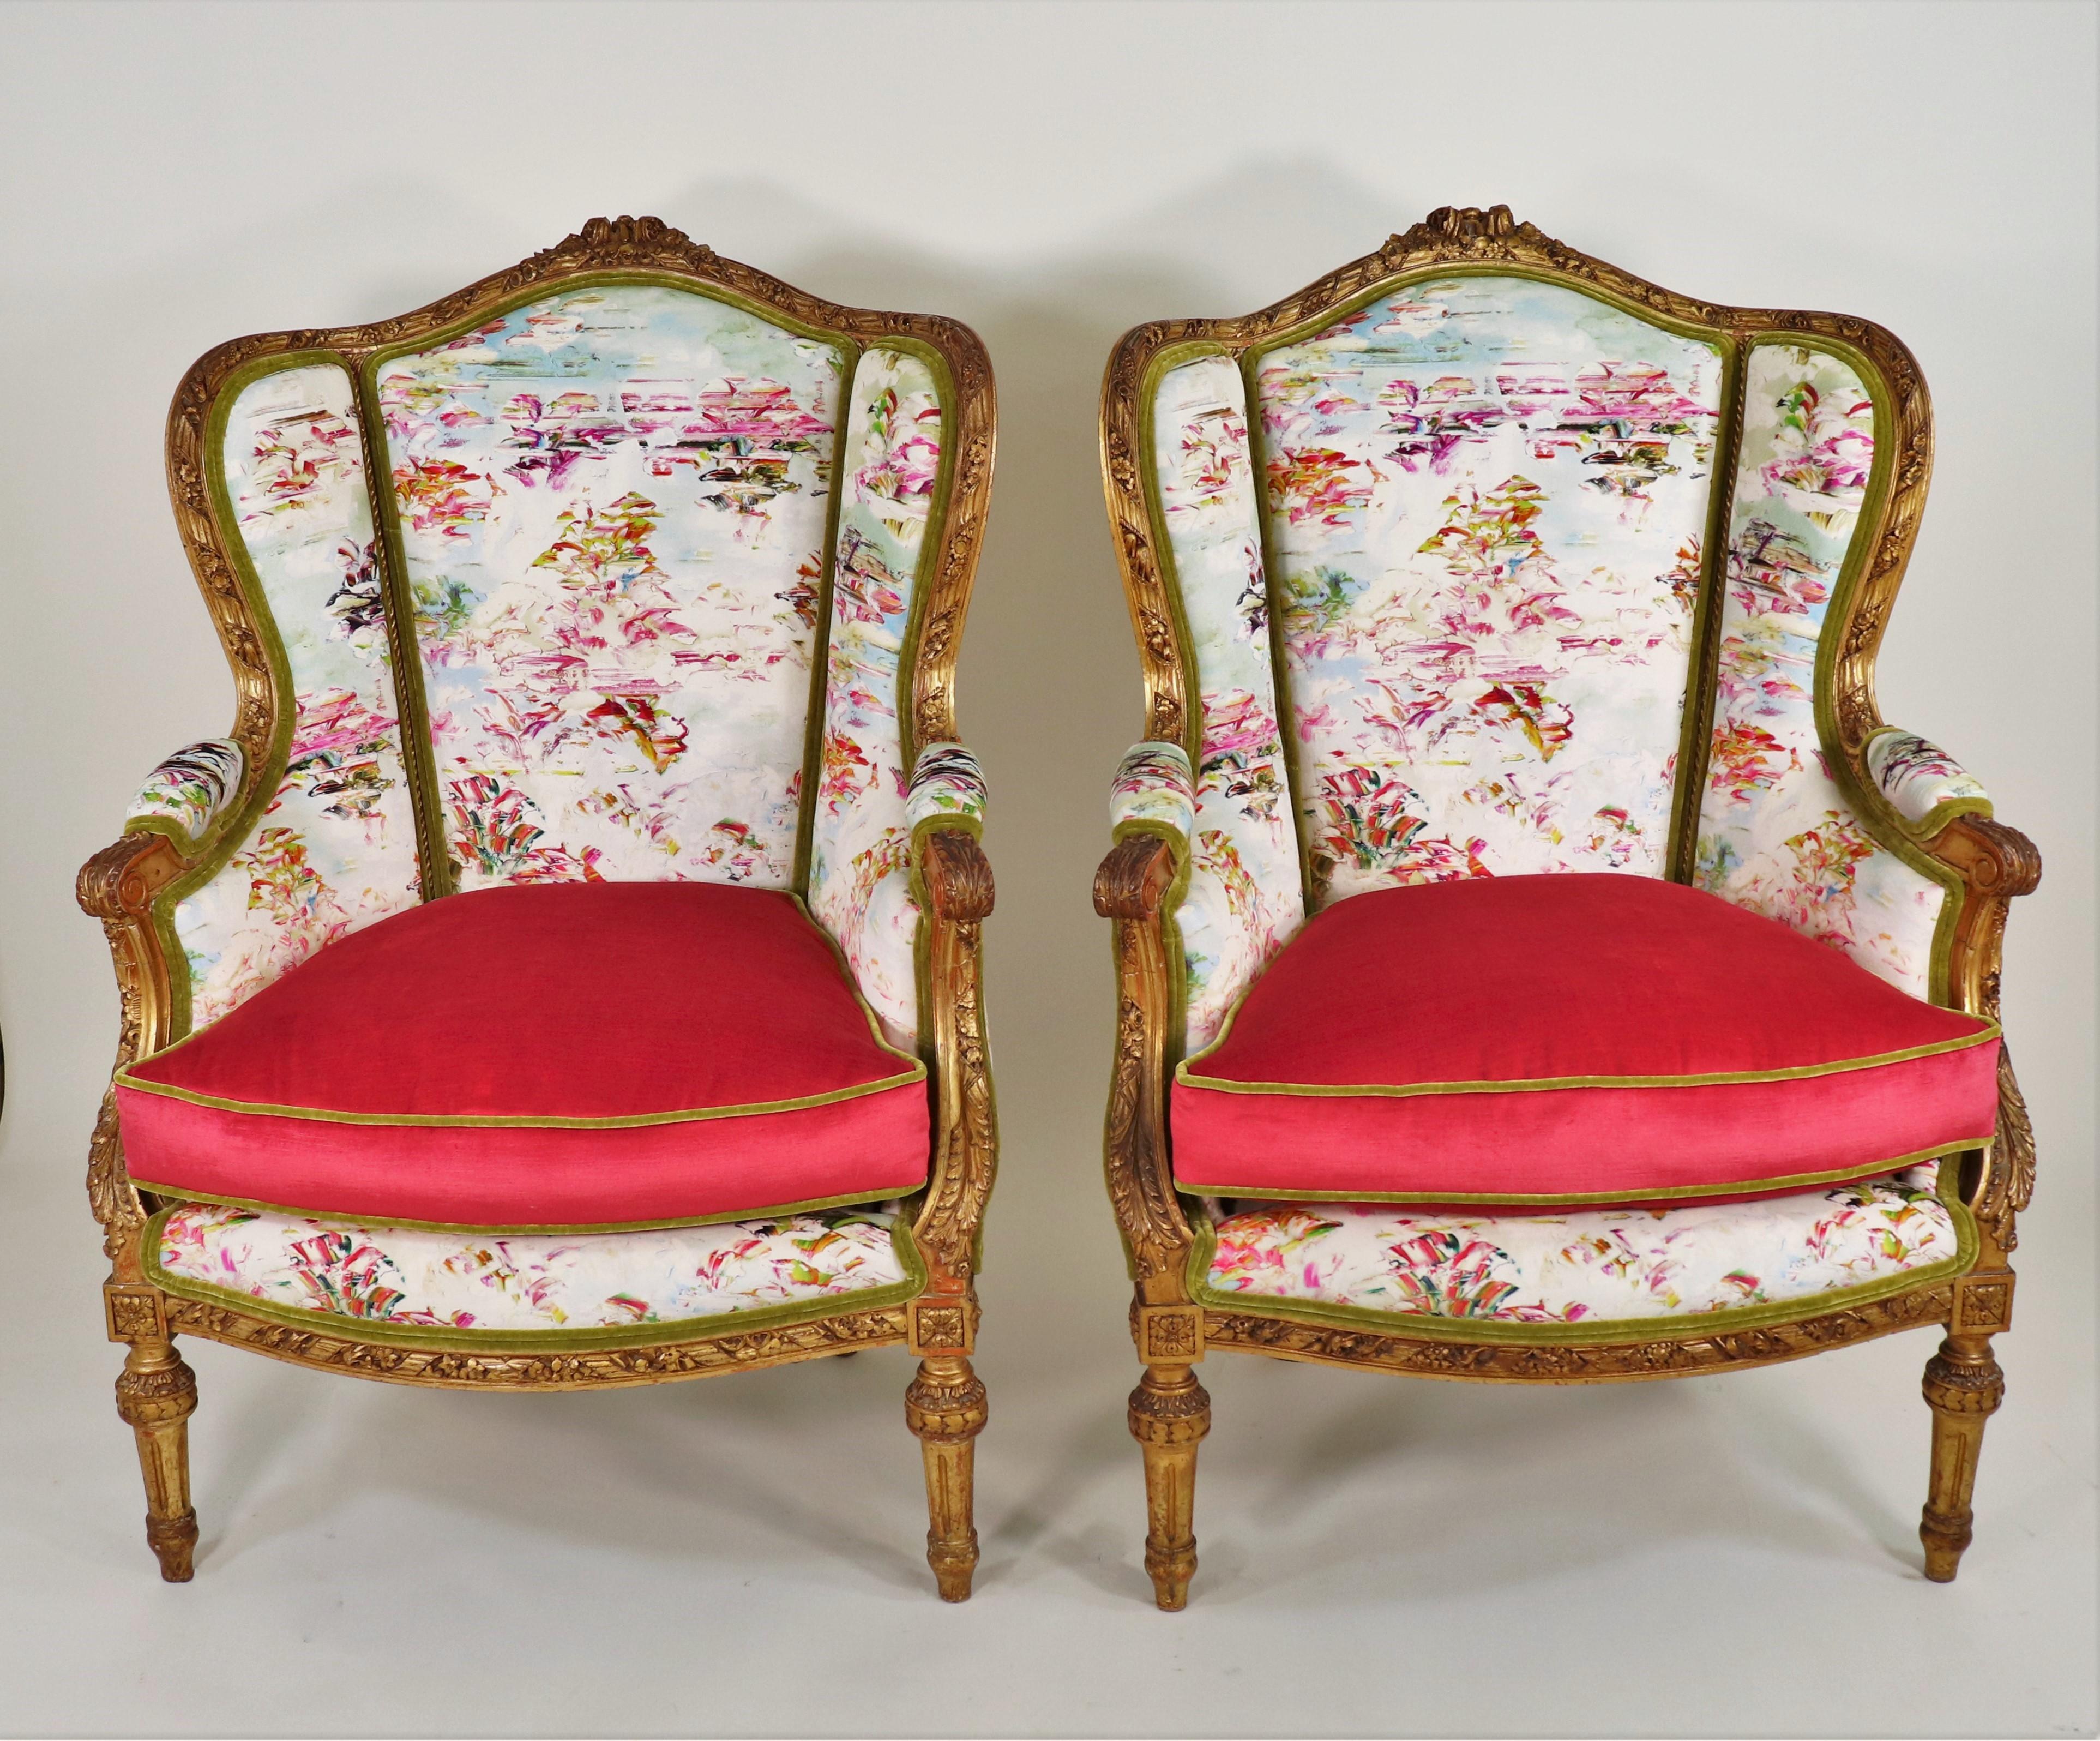 Cette paire de fauteuils bergère en bois doré de style Louis XVI du milieu du XIXe siècle est polyvalente, classique et confortable. Au cours de la seconde moitié du XVIIIe siècle, le mobilier français a subi une révision néoclassique qui l'a